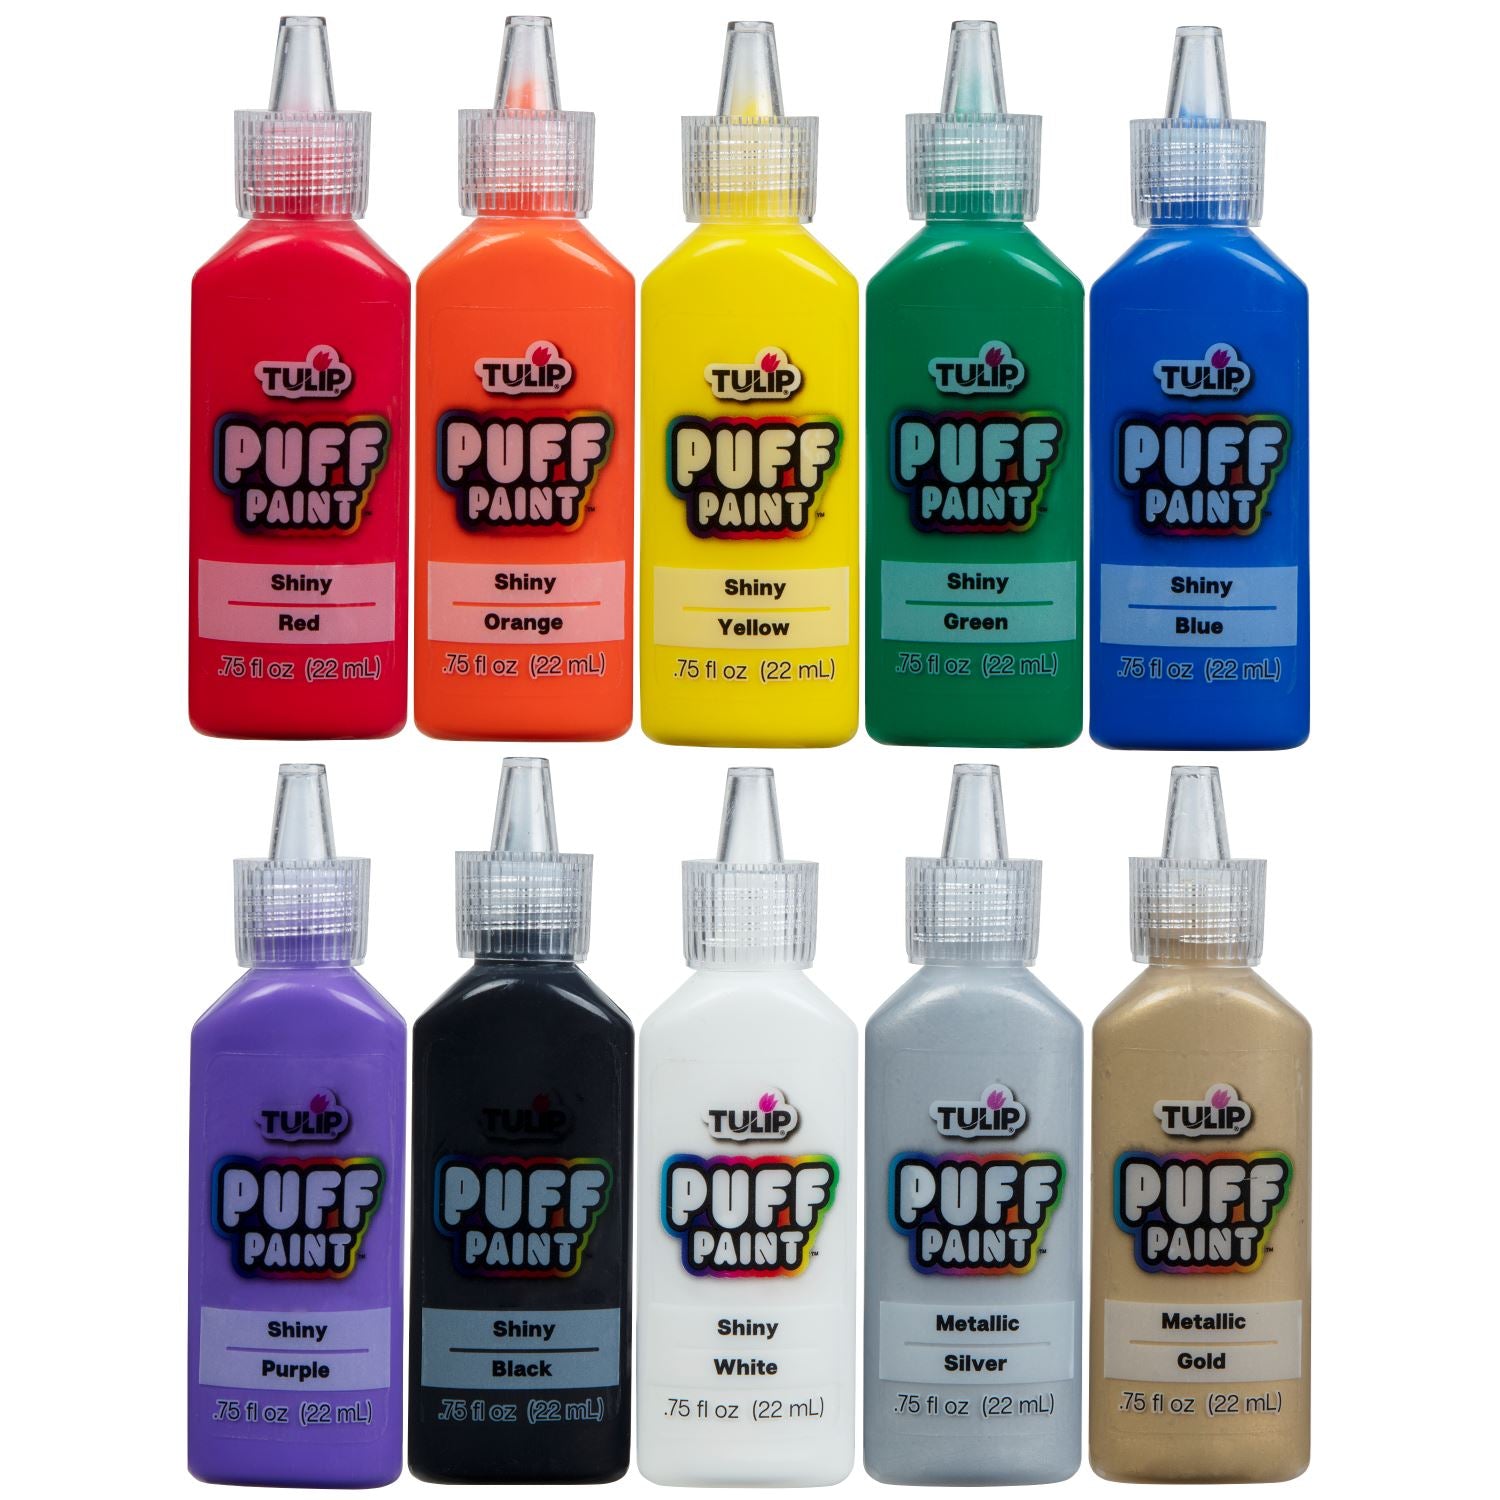 Tulip Puff Paint Essentials .75 fl oz 10 Pack - 2